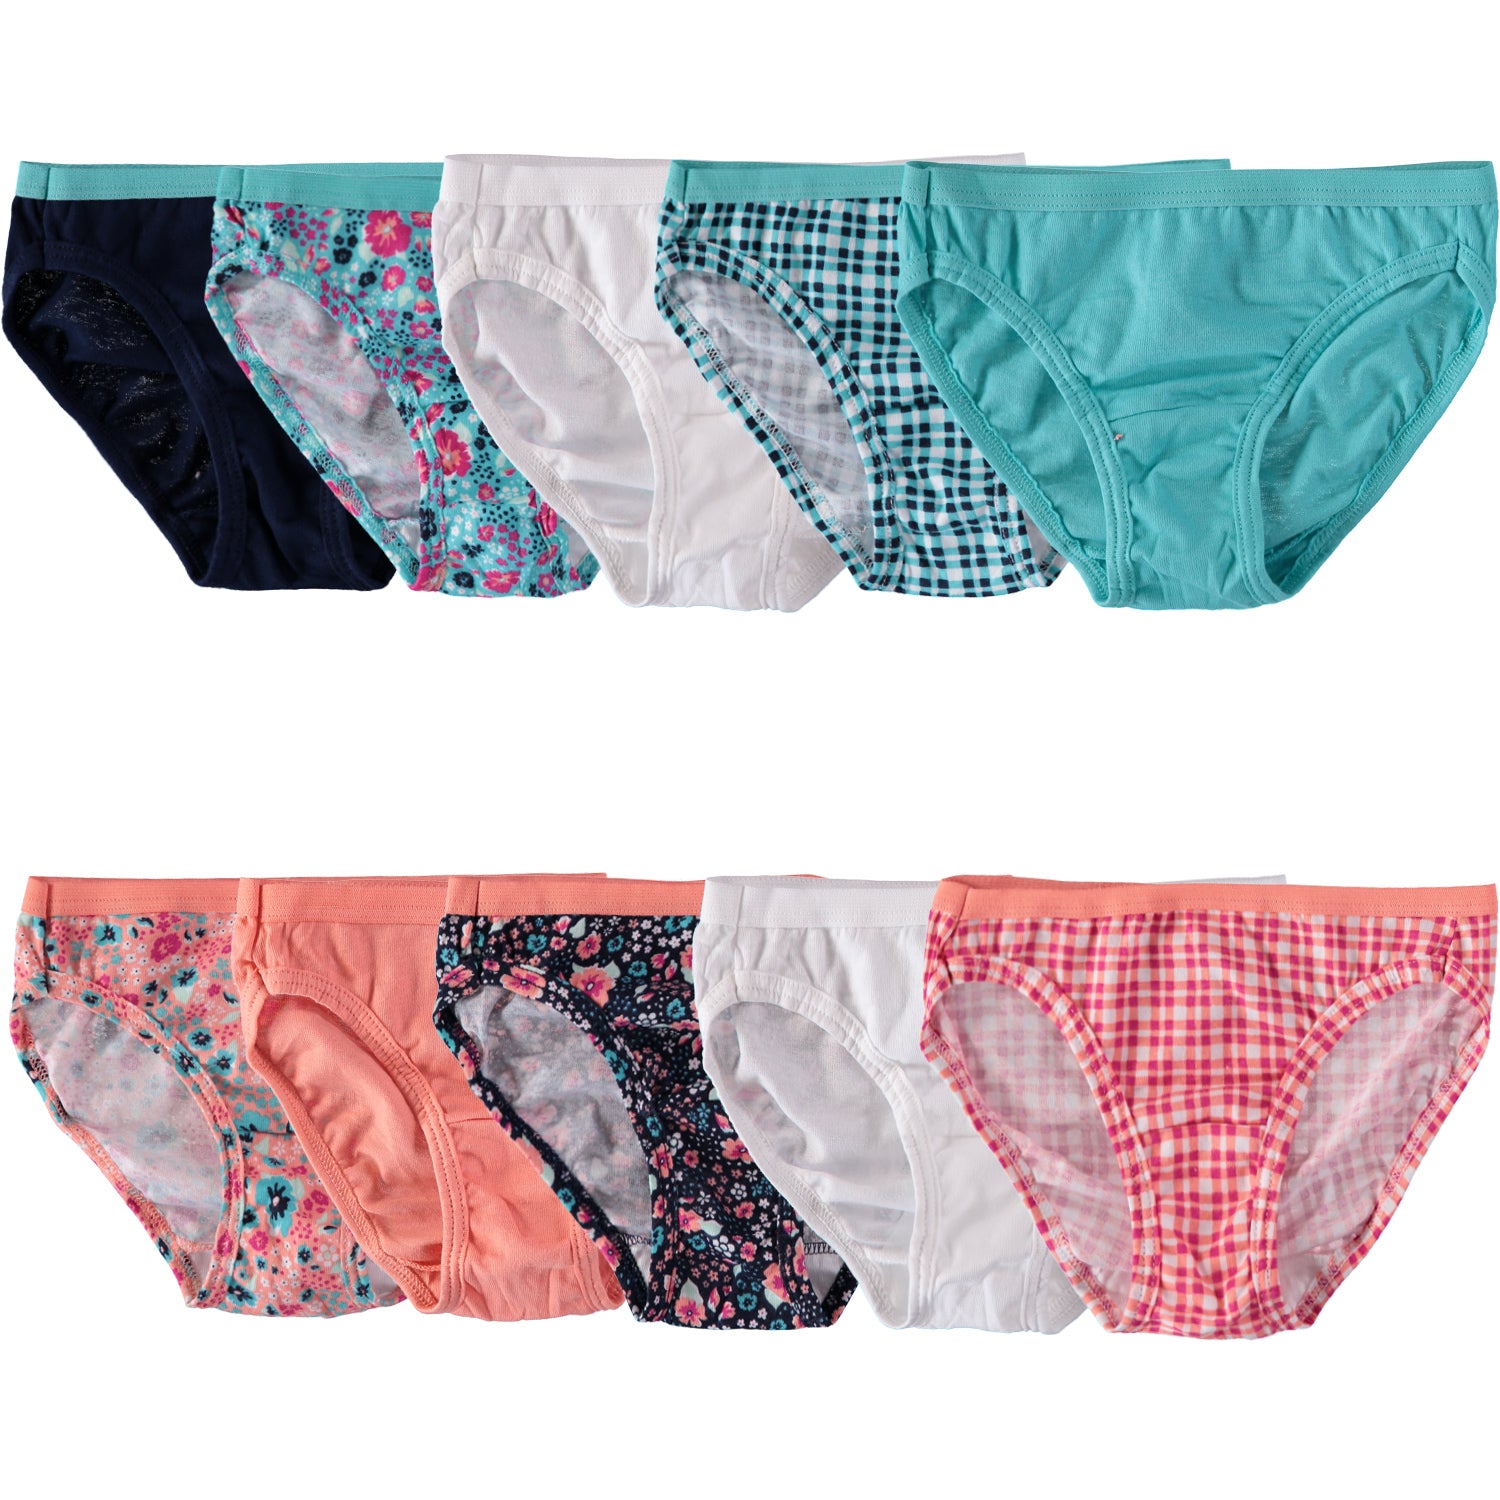 8 X Girls underwear undies briefs knickers Cotton Size 4-14 year